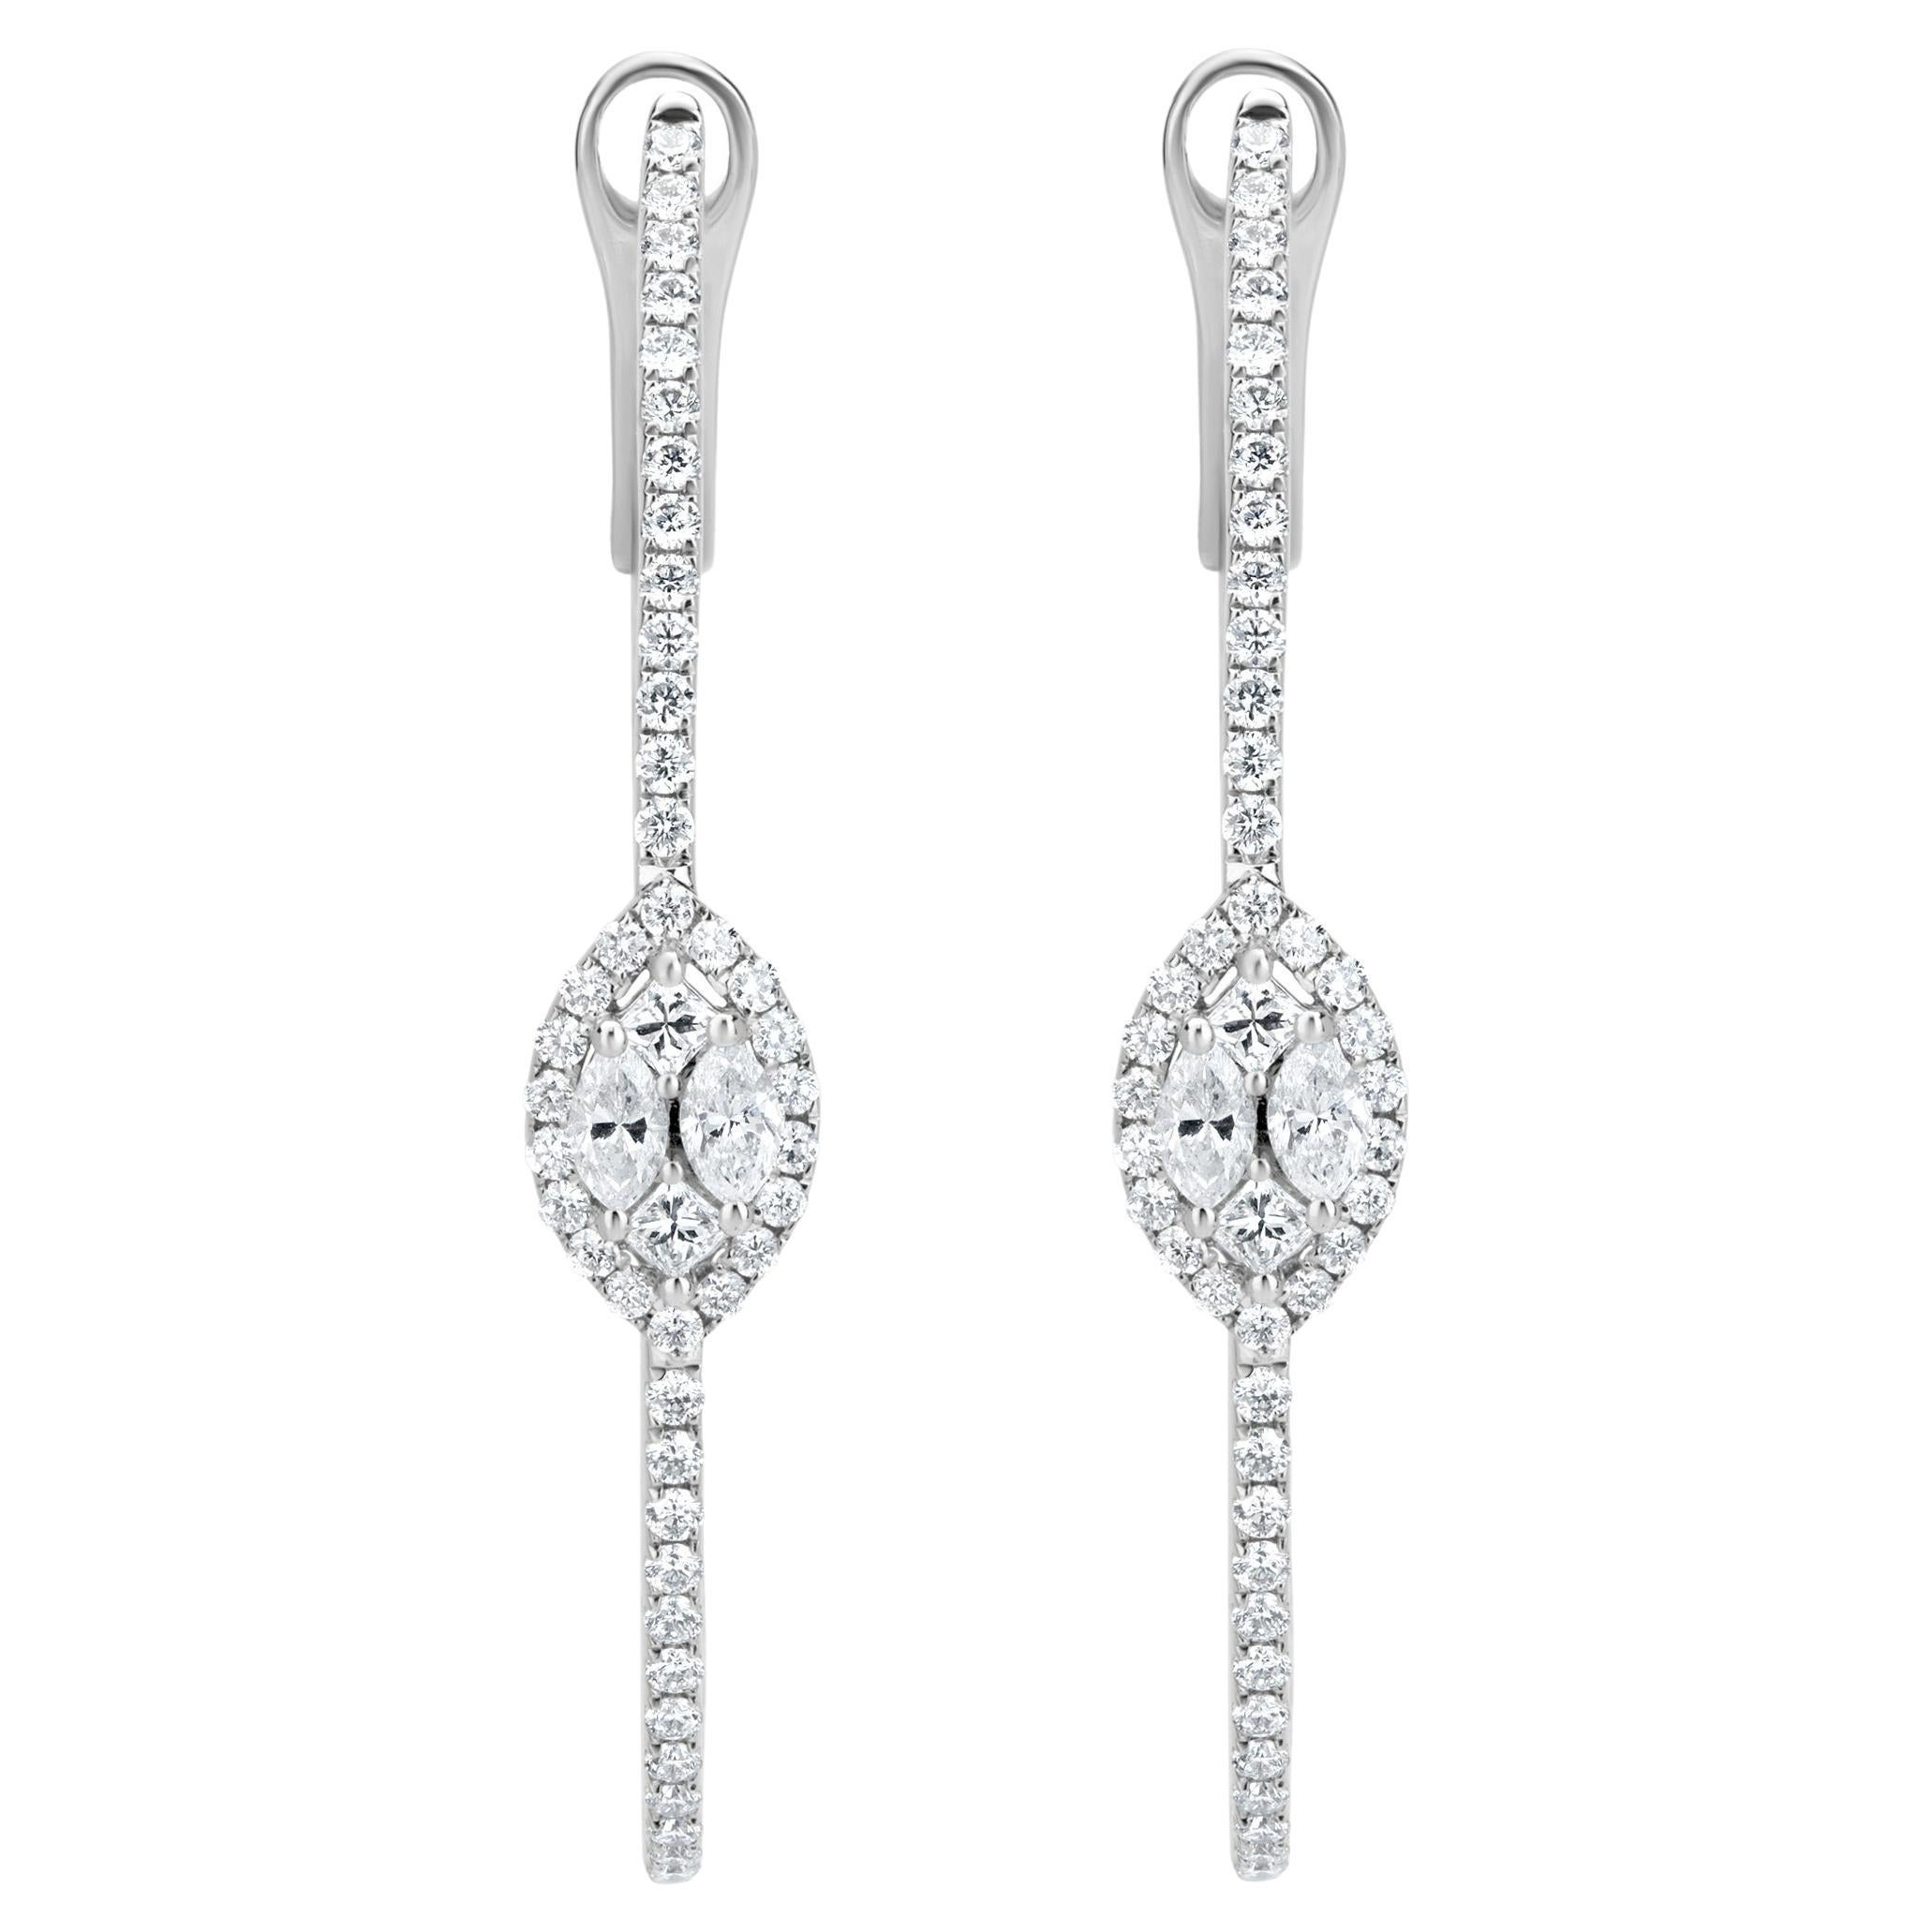 Luxle 1.61cttw Diamond Inside-Out Hoop Earrings in 18k White Gold